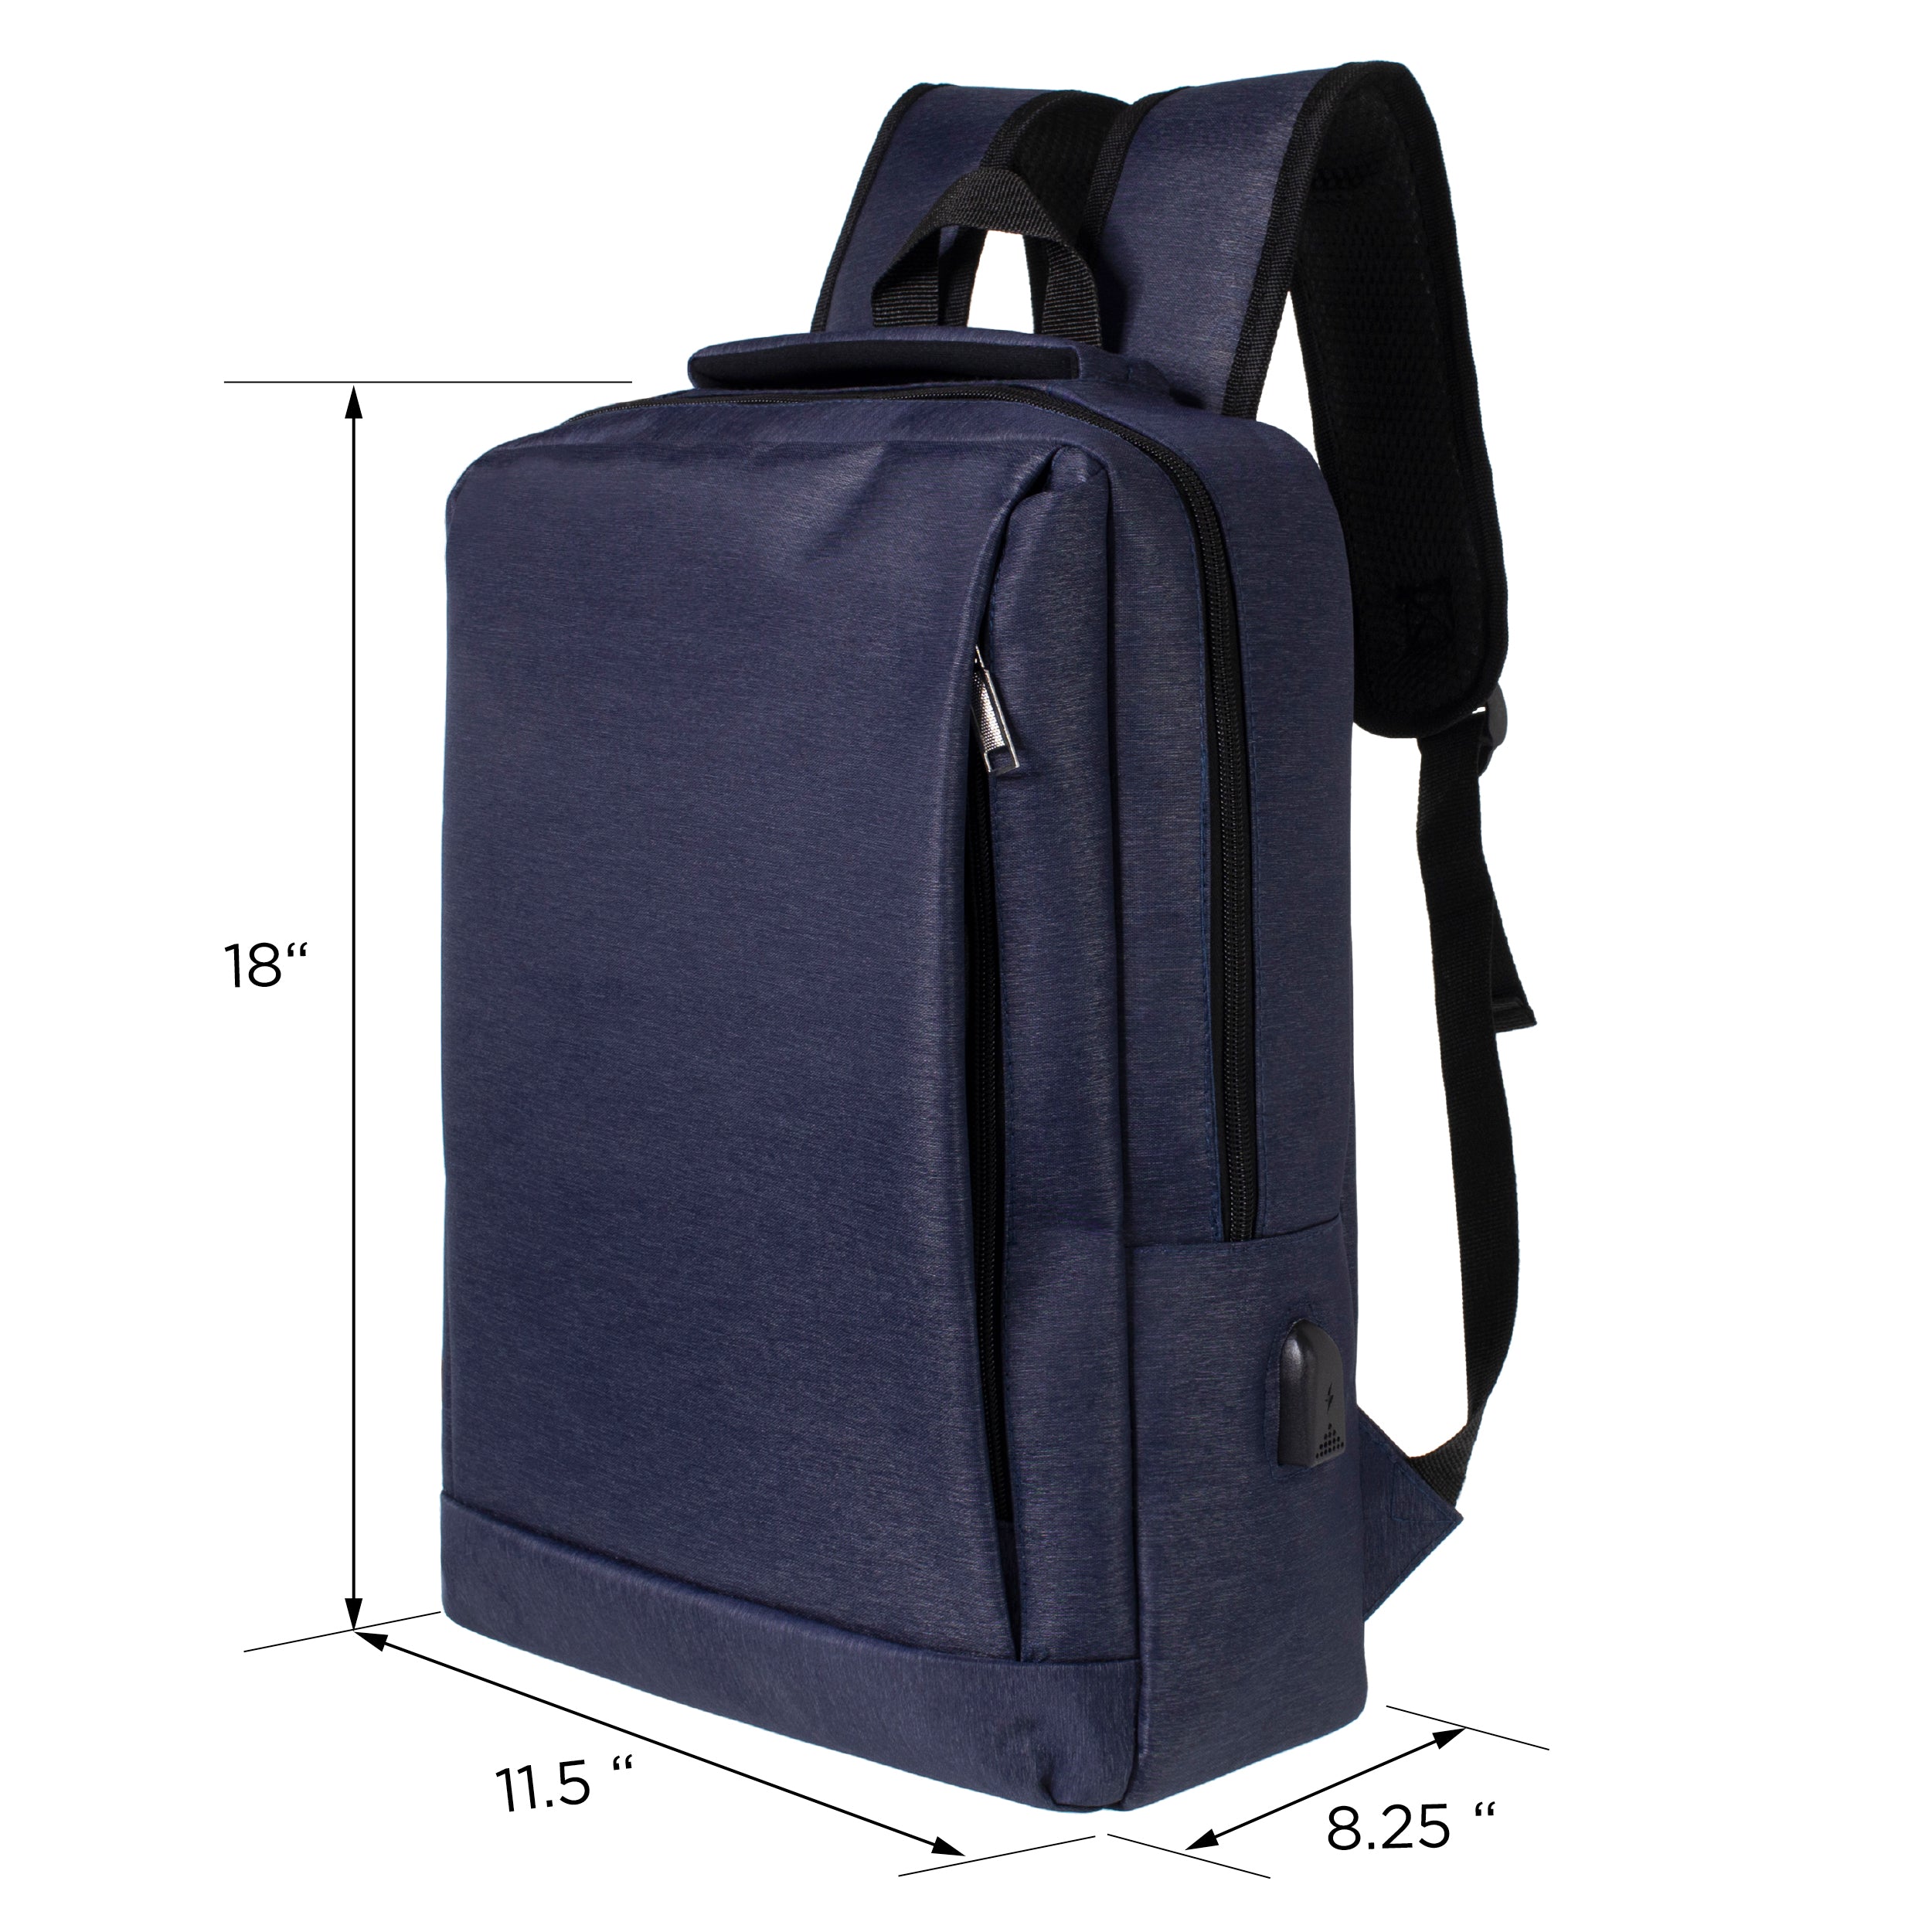 18" Wholesale Premium Backpacks in Black & Navy - Wholesale Bookbags Case of 24